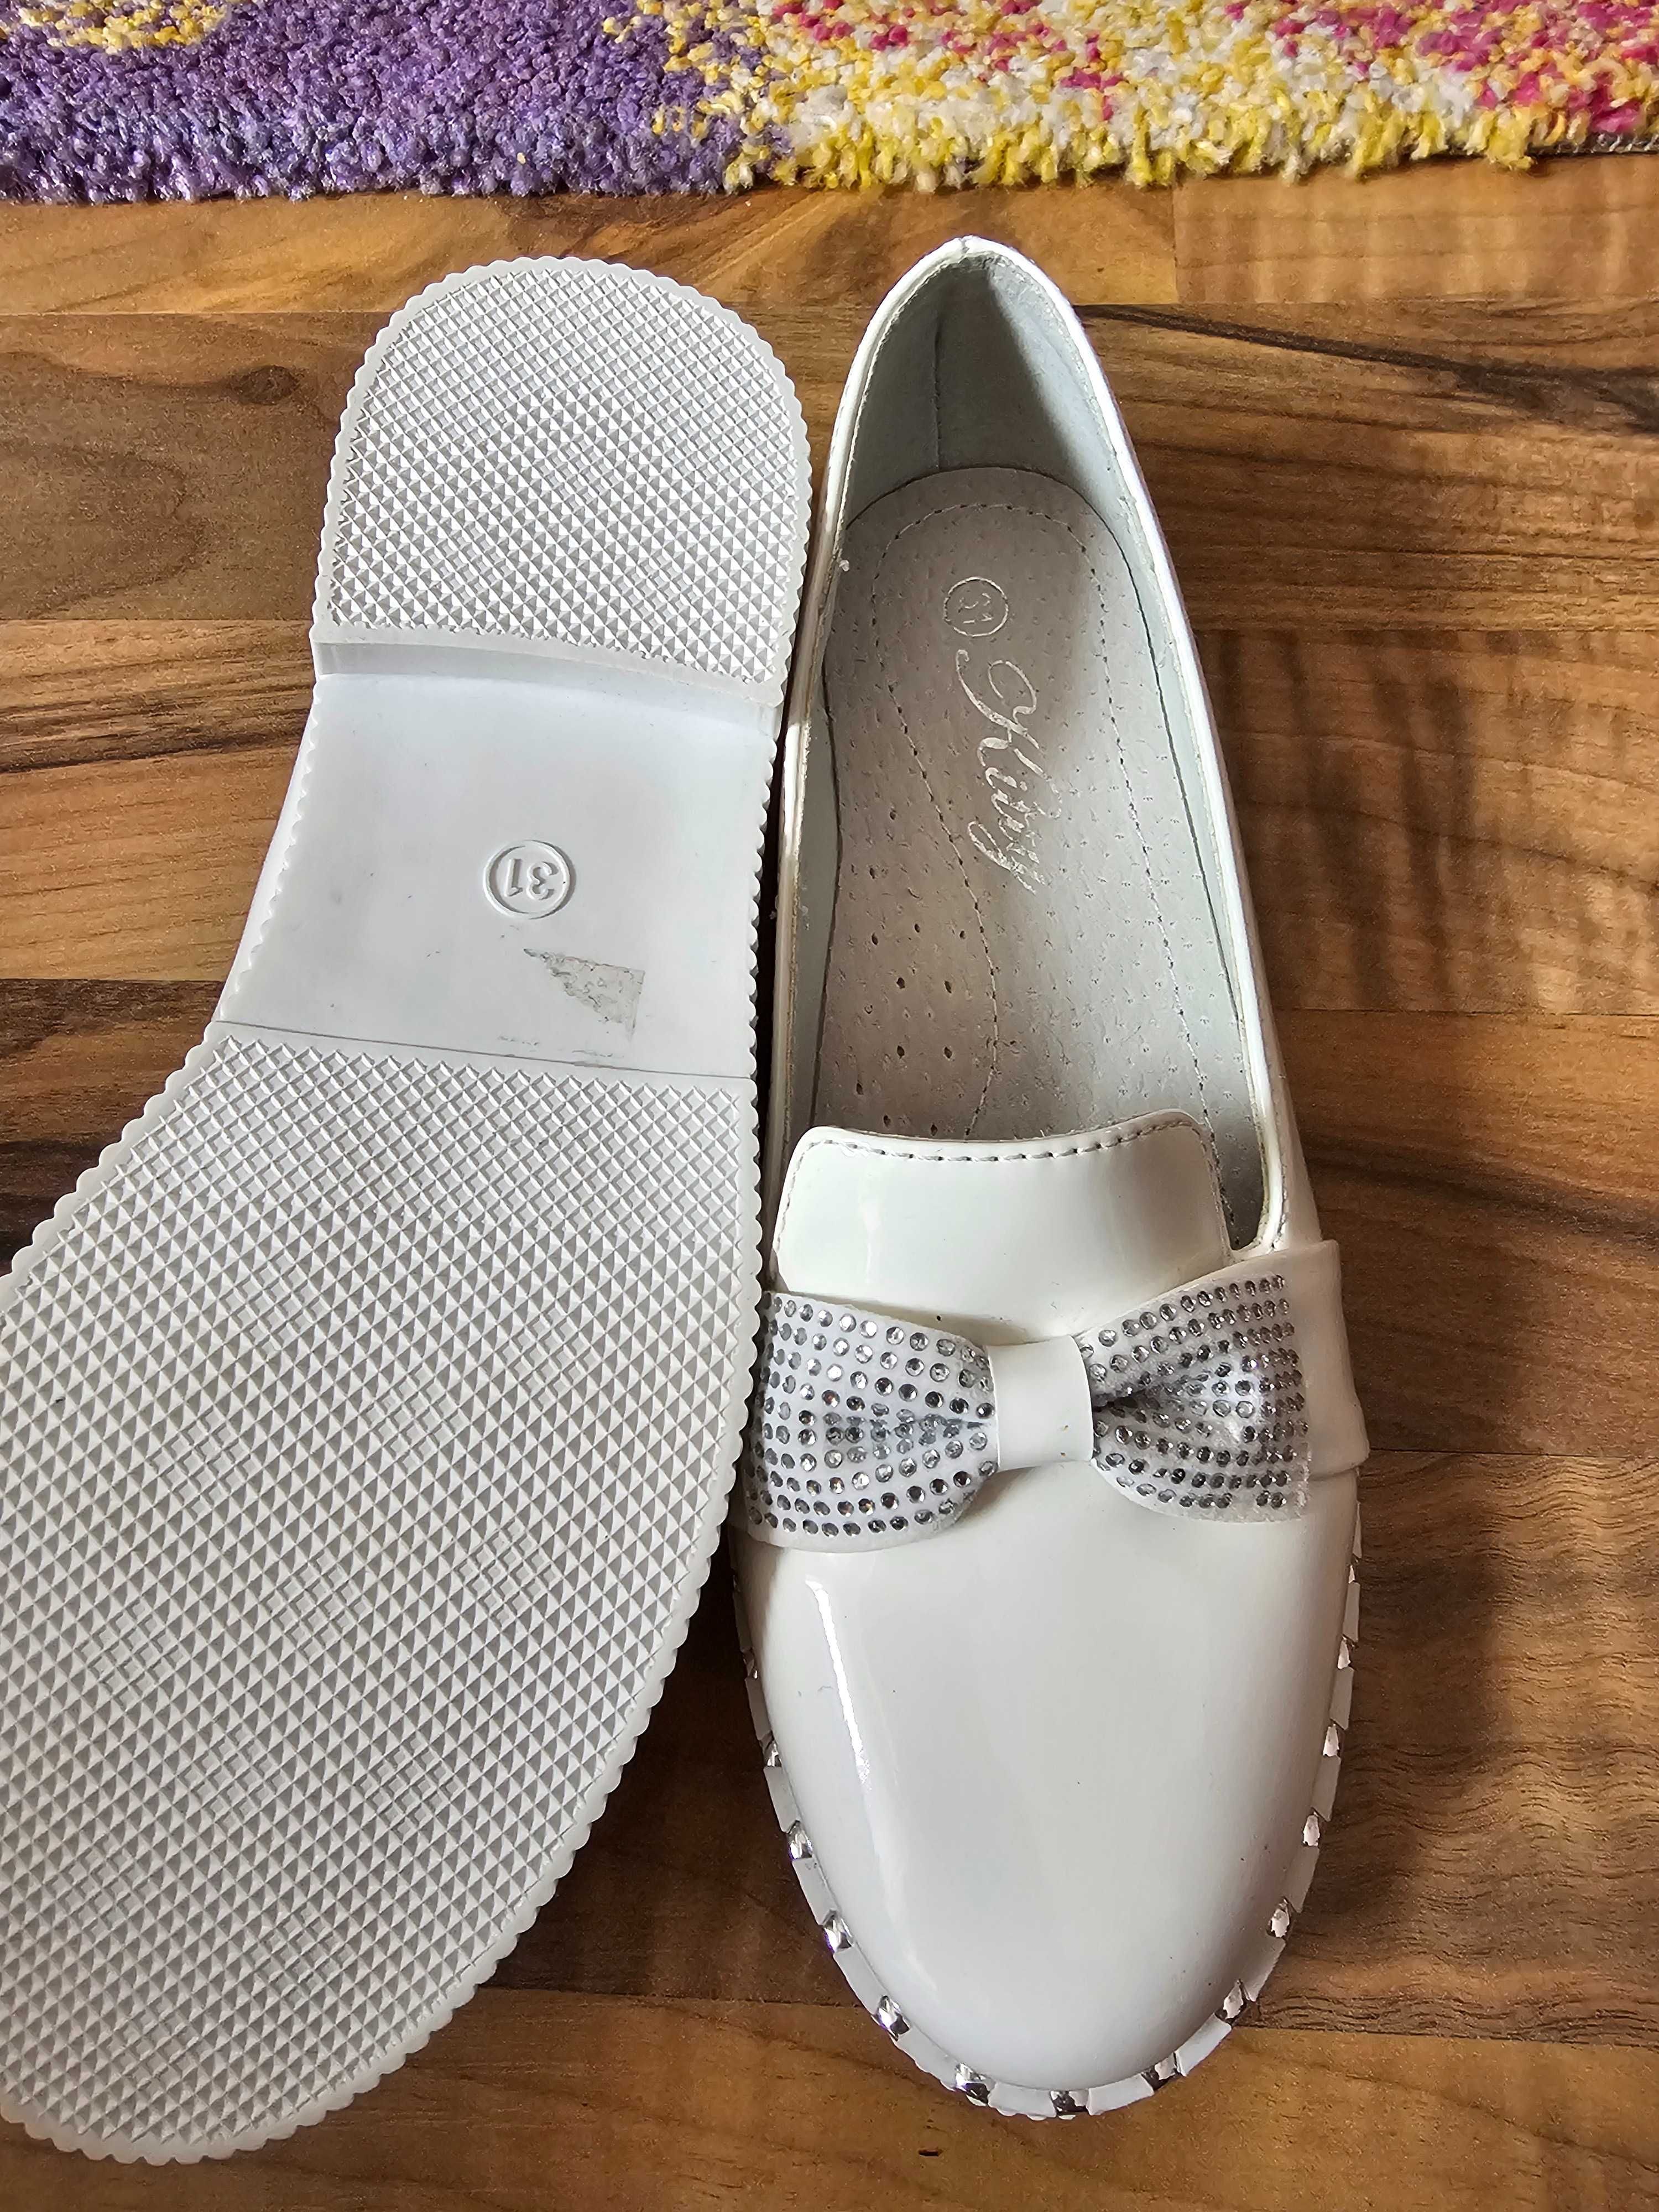 Pantofi albi de lac fetițe in stare perfecta mărimea 31